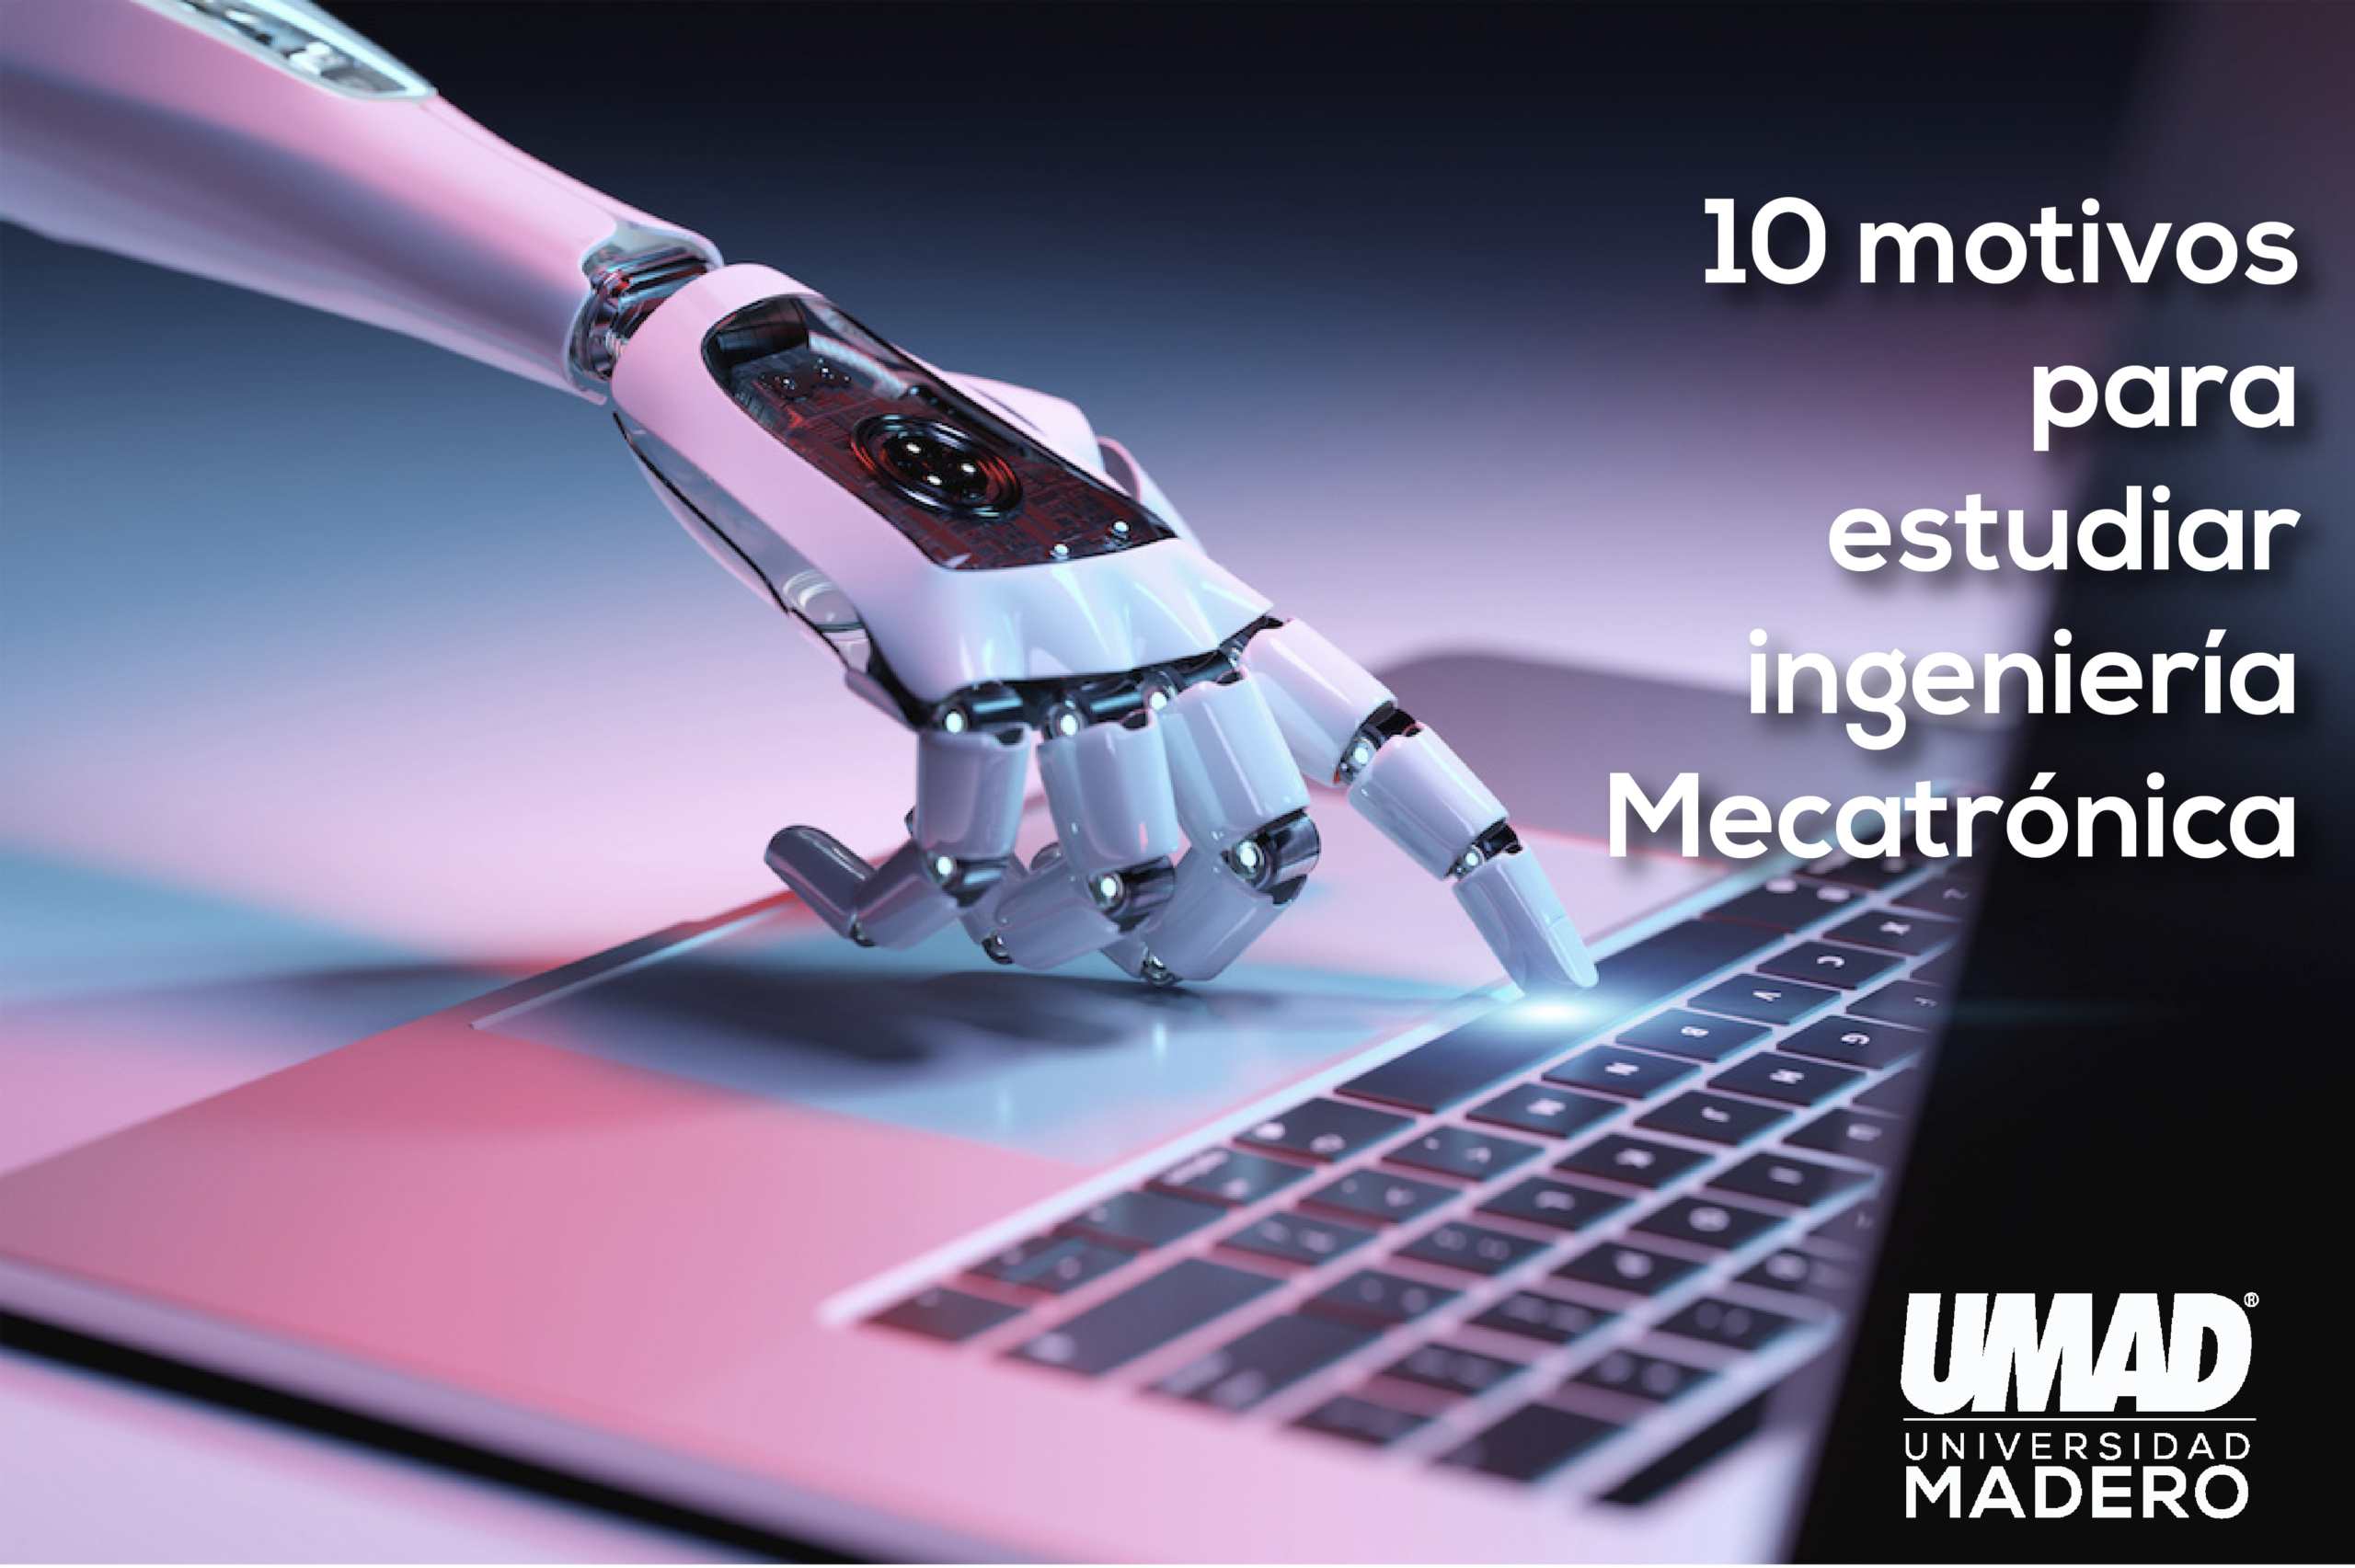 10 motivos para estudiar ingeniería Mecatrónica – UMAD